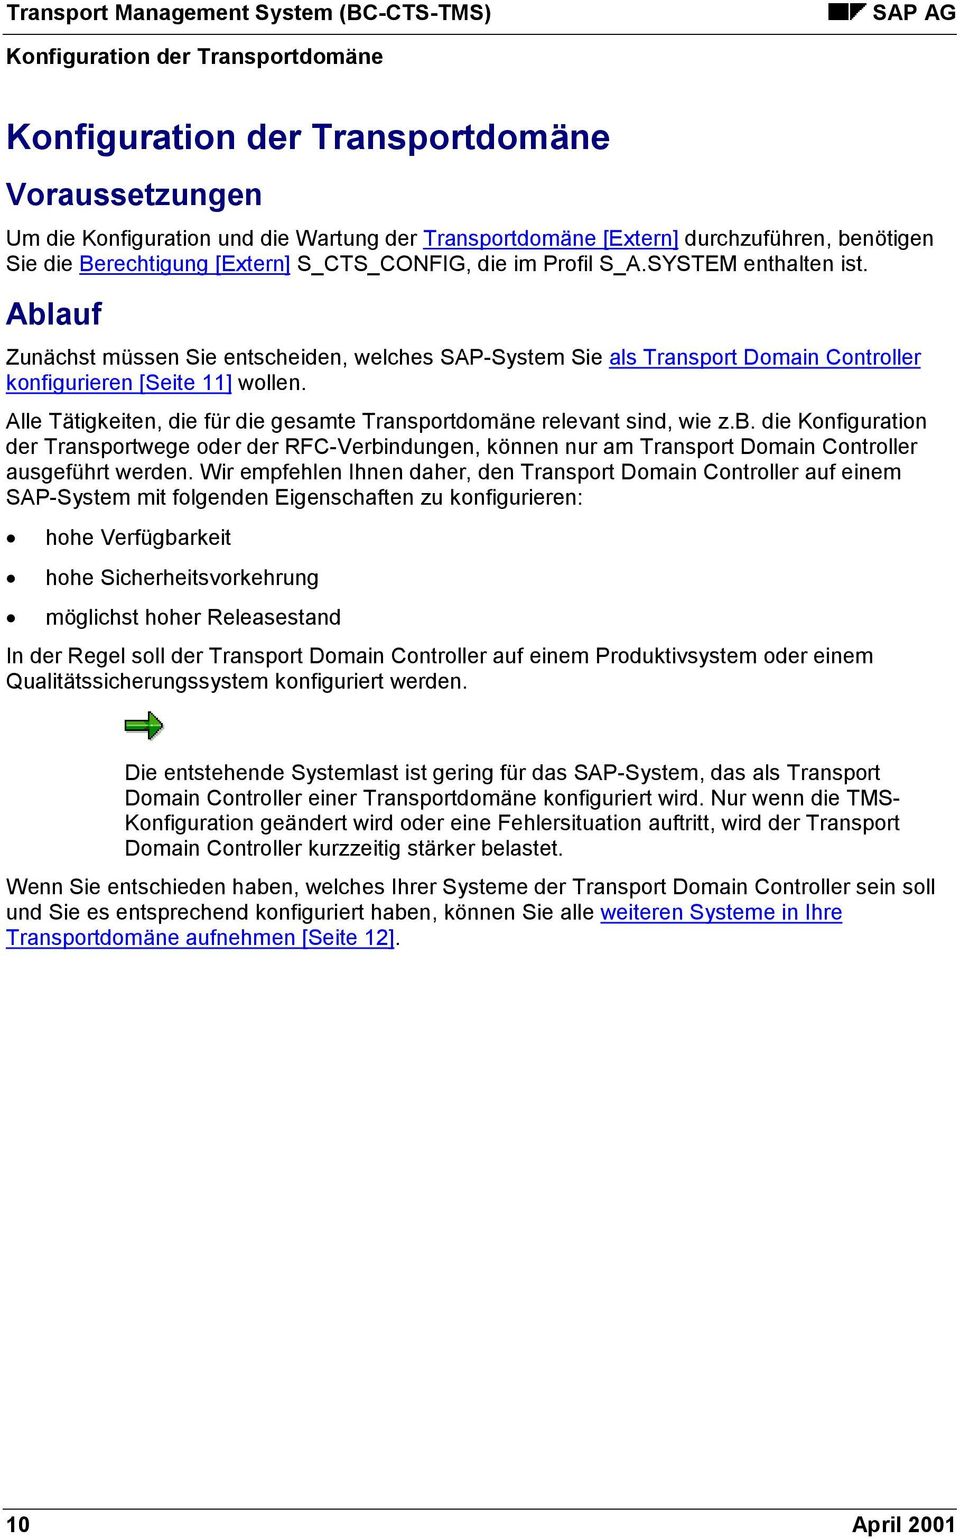 Ablauf Zunächst müssen Sie entscheiden, welches SAP-System Sie als Transport Domain Controller konfigurieren [Seite 11] wollen.